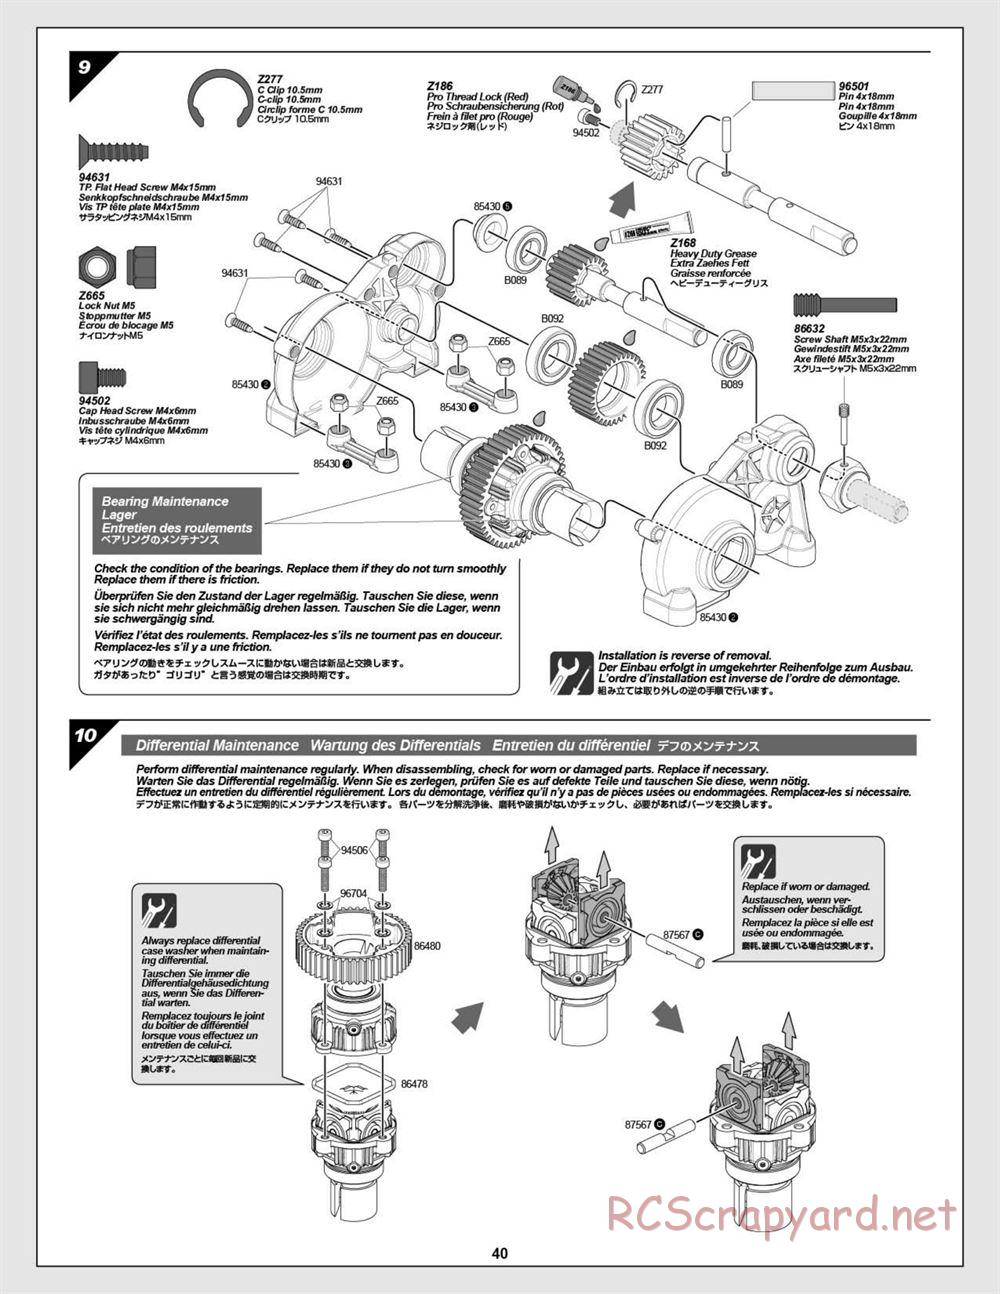 HPI - Baja 5B Flux Buggy - Manual - Page 40